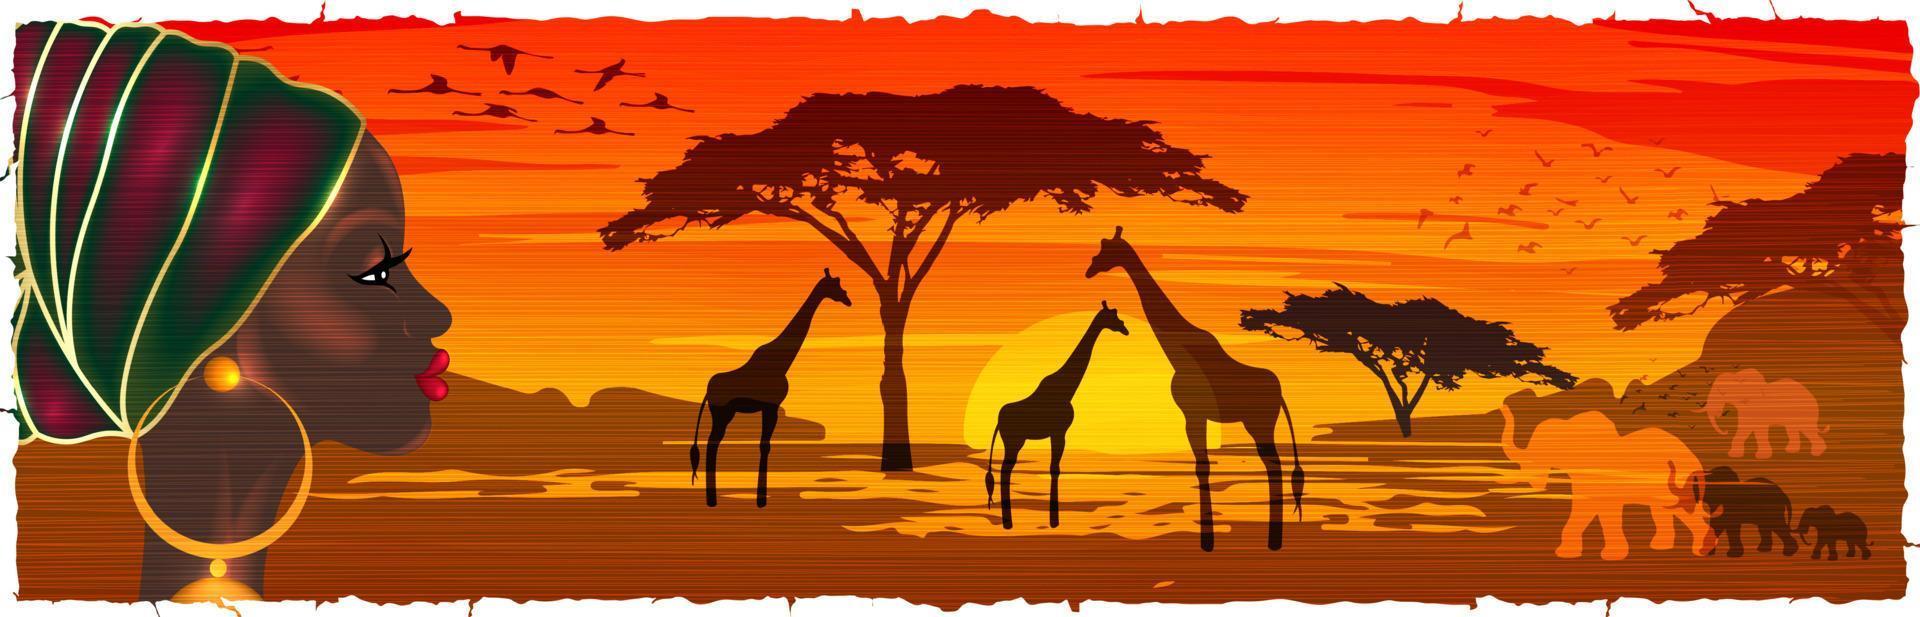 afrikanische frau im turban, die die savannenlandschaft bei sonnenuntergang betrachtet, silhouetten von tieren und pflanzen, natur afrikas. Reservate und Nationalparks, Vektorbatikhintergrund vektor